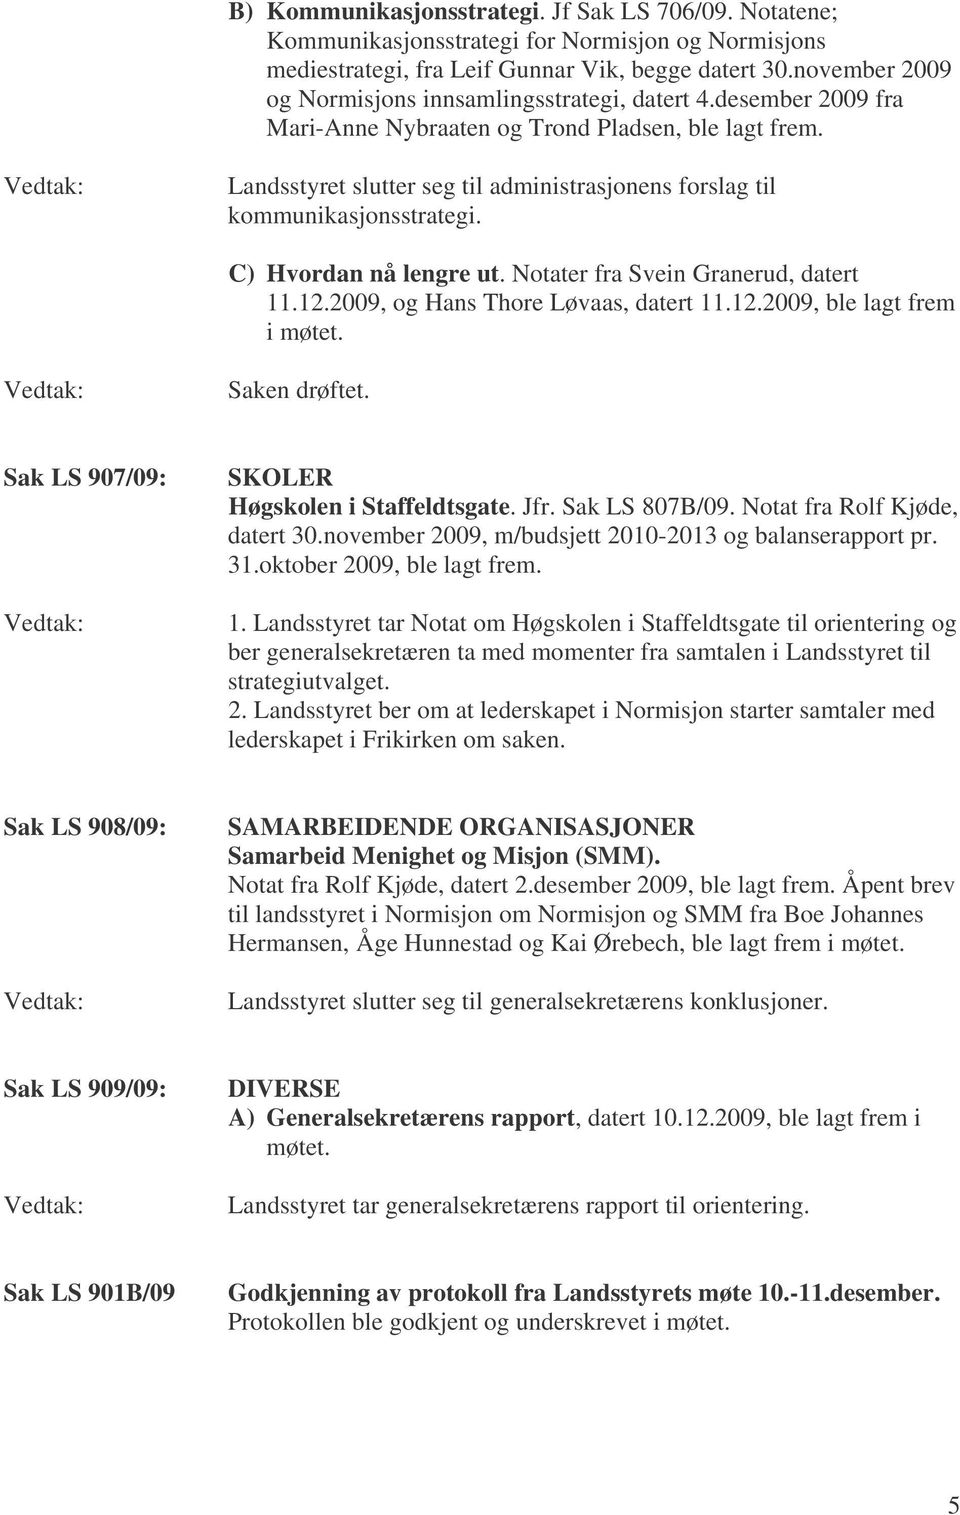 Landsstyret slutter seg til administrasjonens forslag til kommunikasjonsstrategi. C) Hvordan nå lengre ut. Notater fra Svein Granerud, datert 11.12.2009, og Hans Thore Løvaas, datert 11.12.2009, ble lagt frem i møtet.